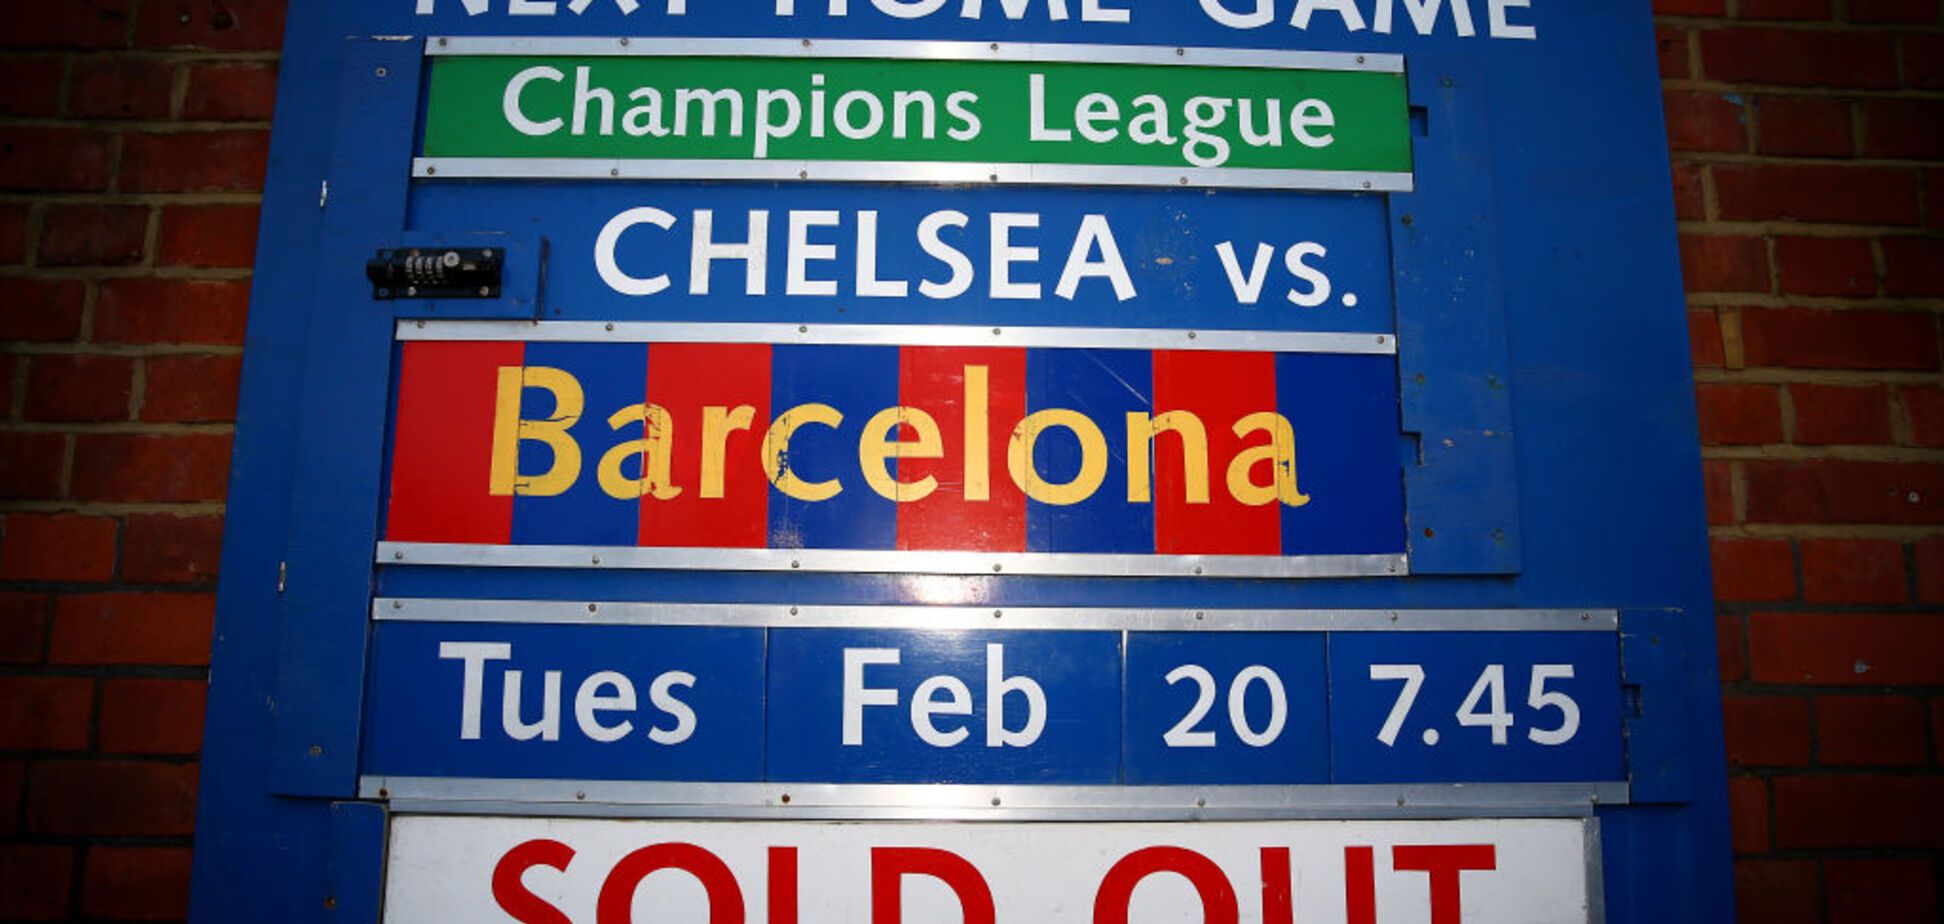 Де дивитися матч Челсі - Барселона: розклад трансляцій матчу Ліги чемпіонів